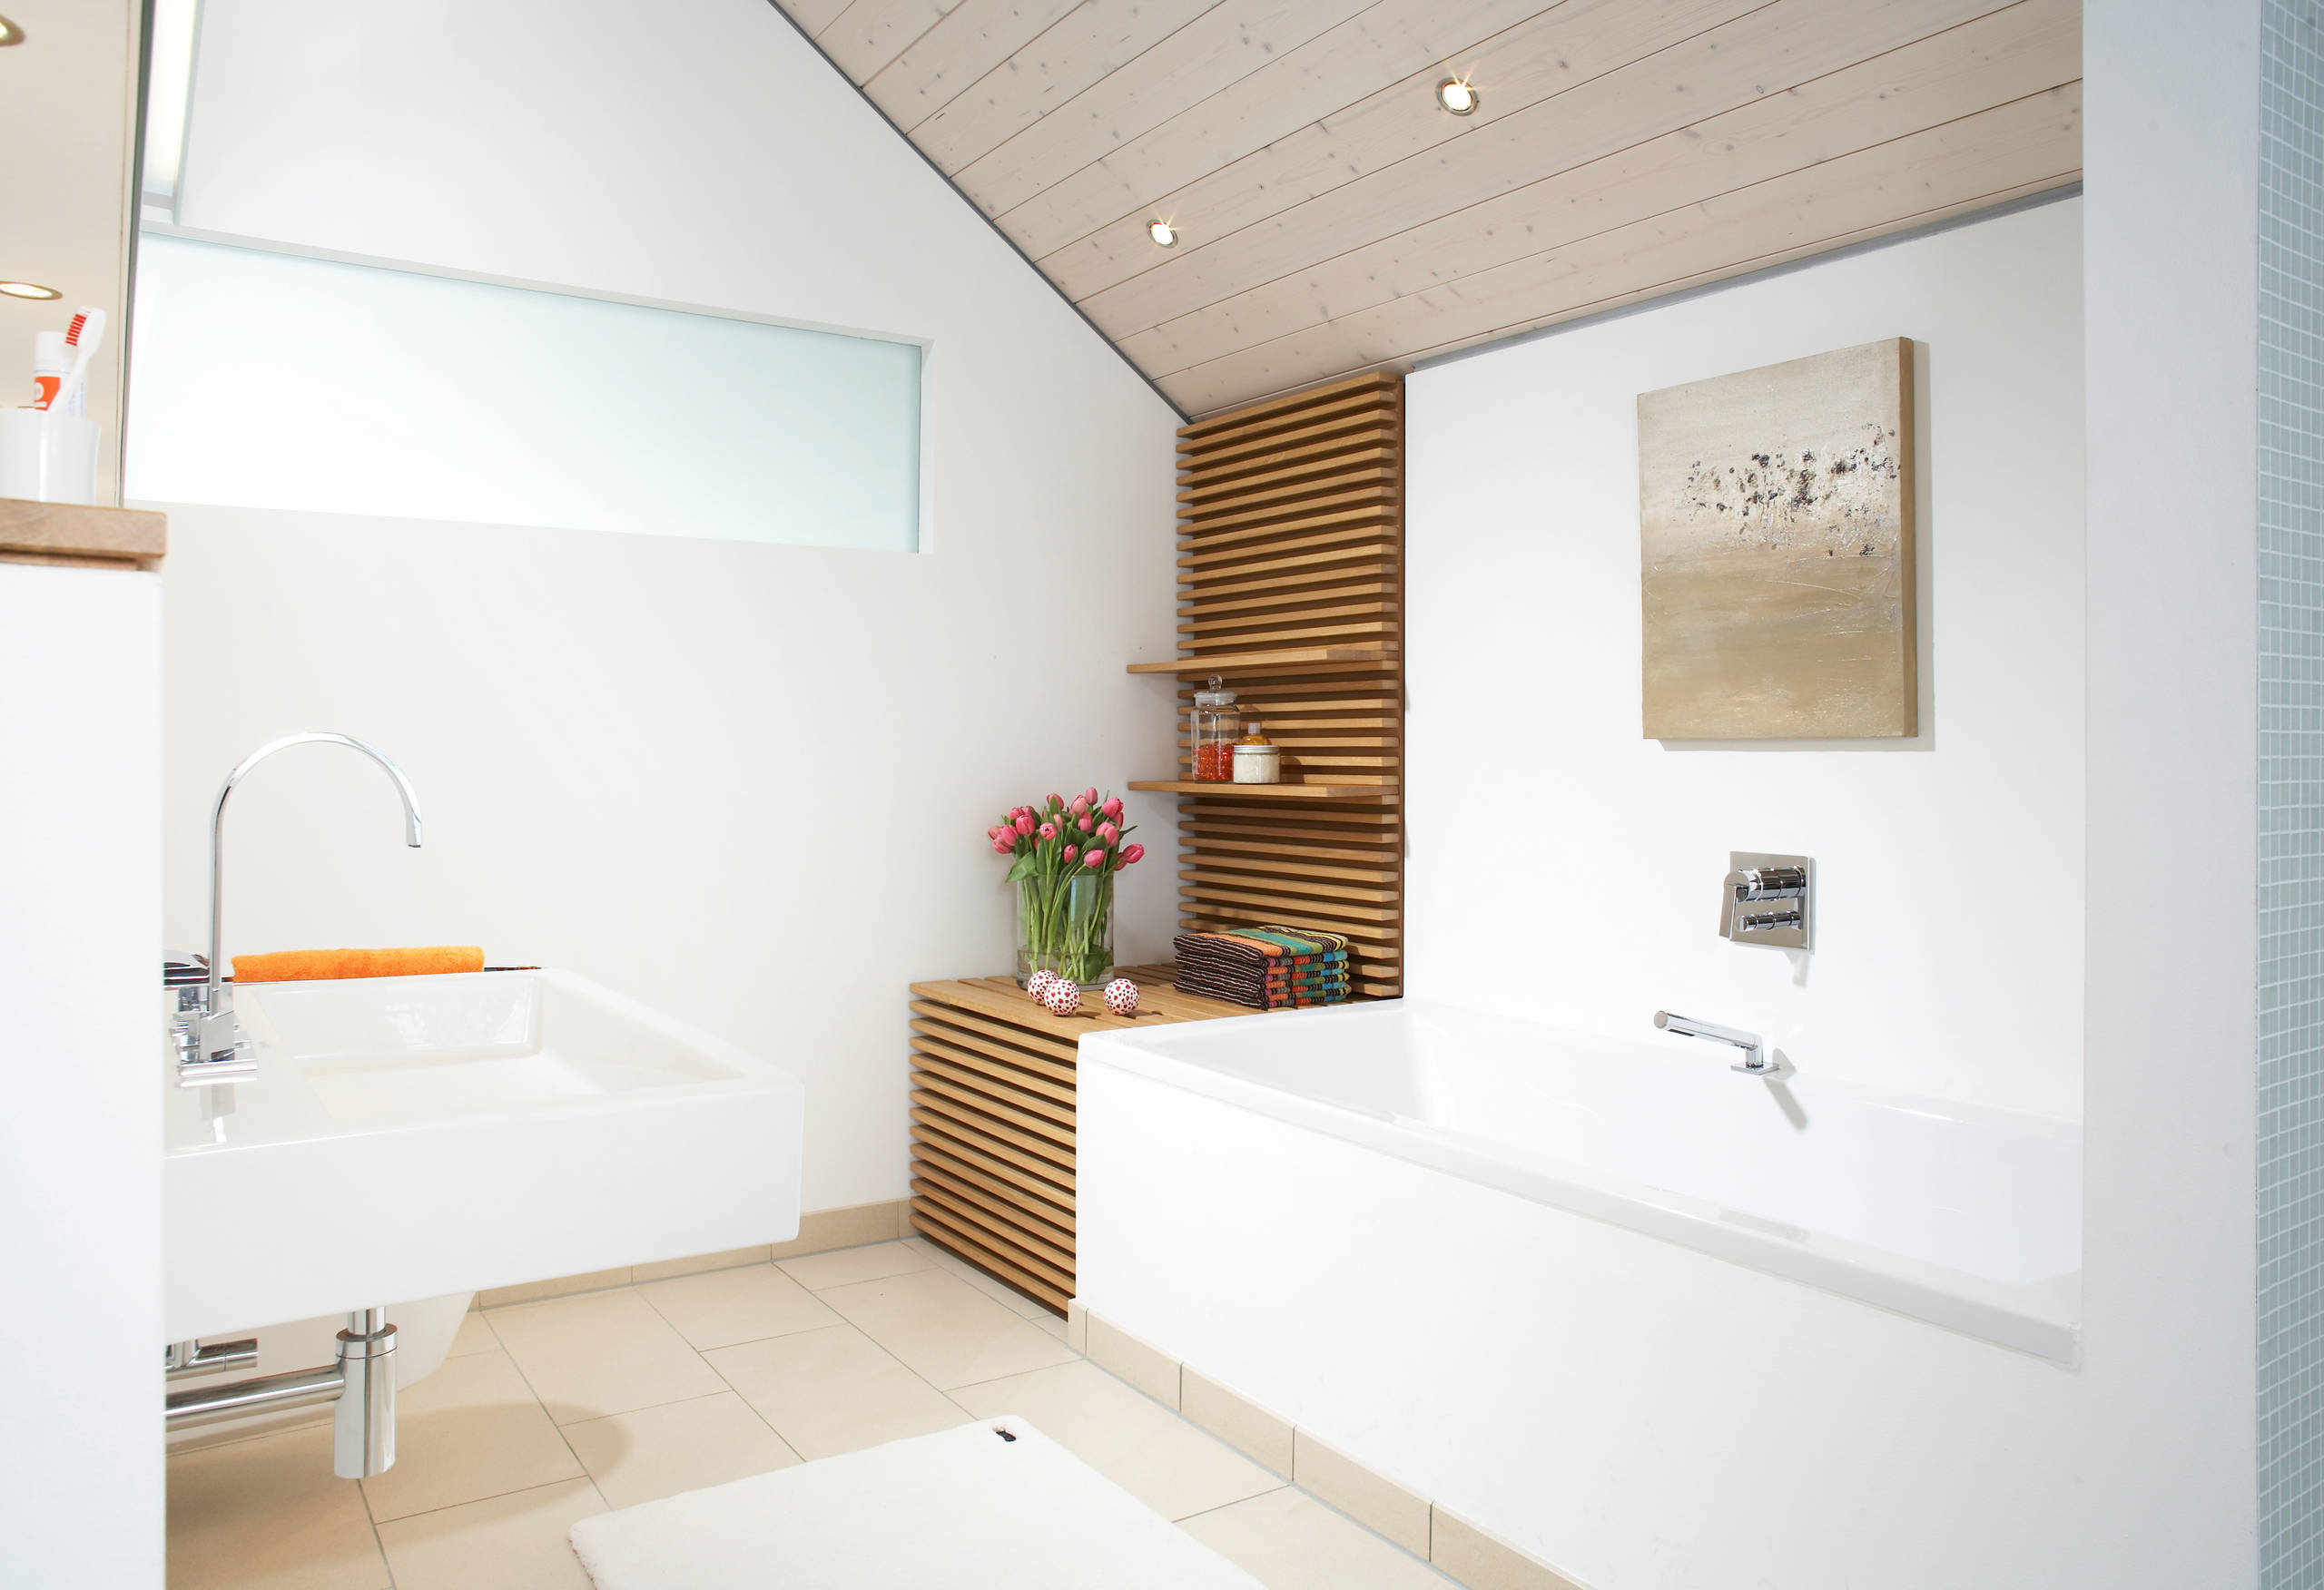 Holz im Badezimmer – Experten-Tipps zu Einbau und Pflege